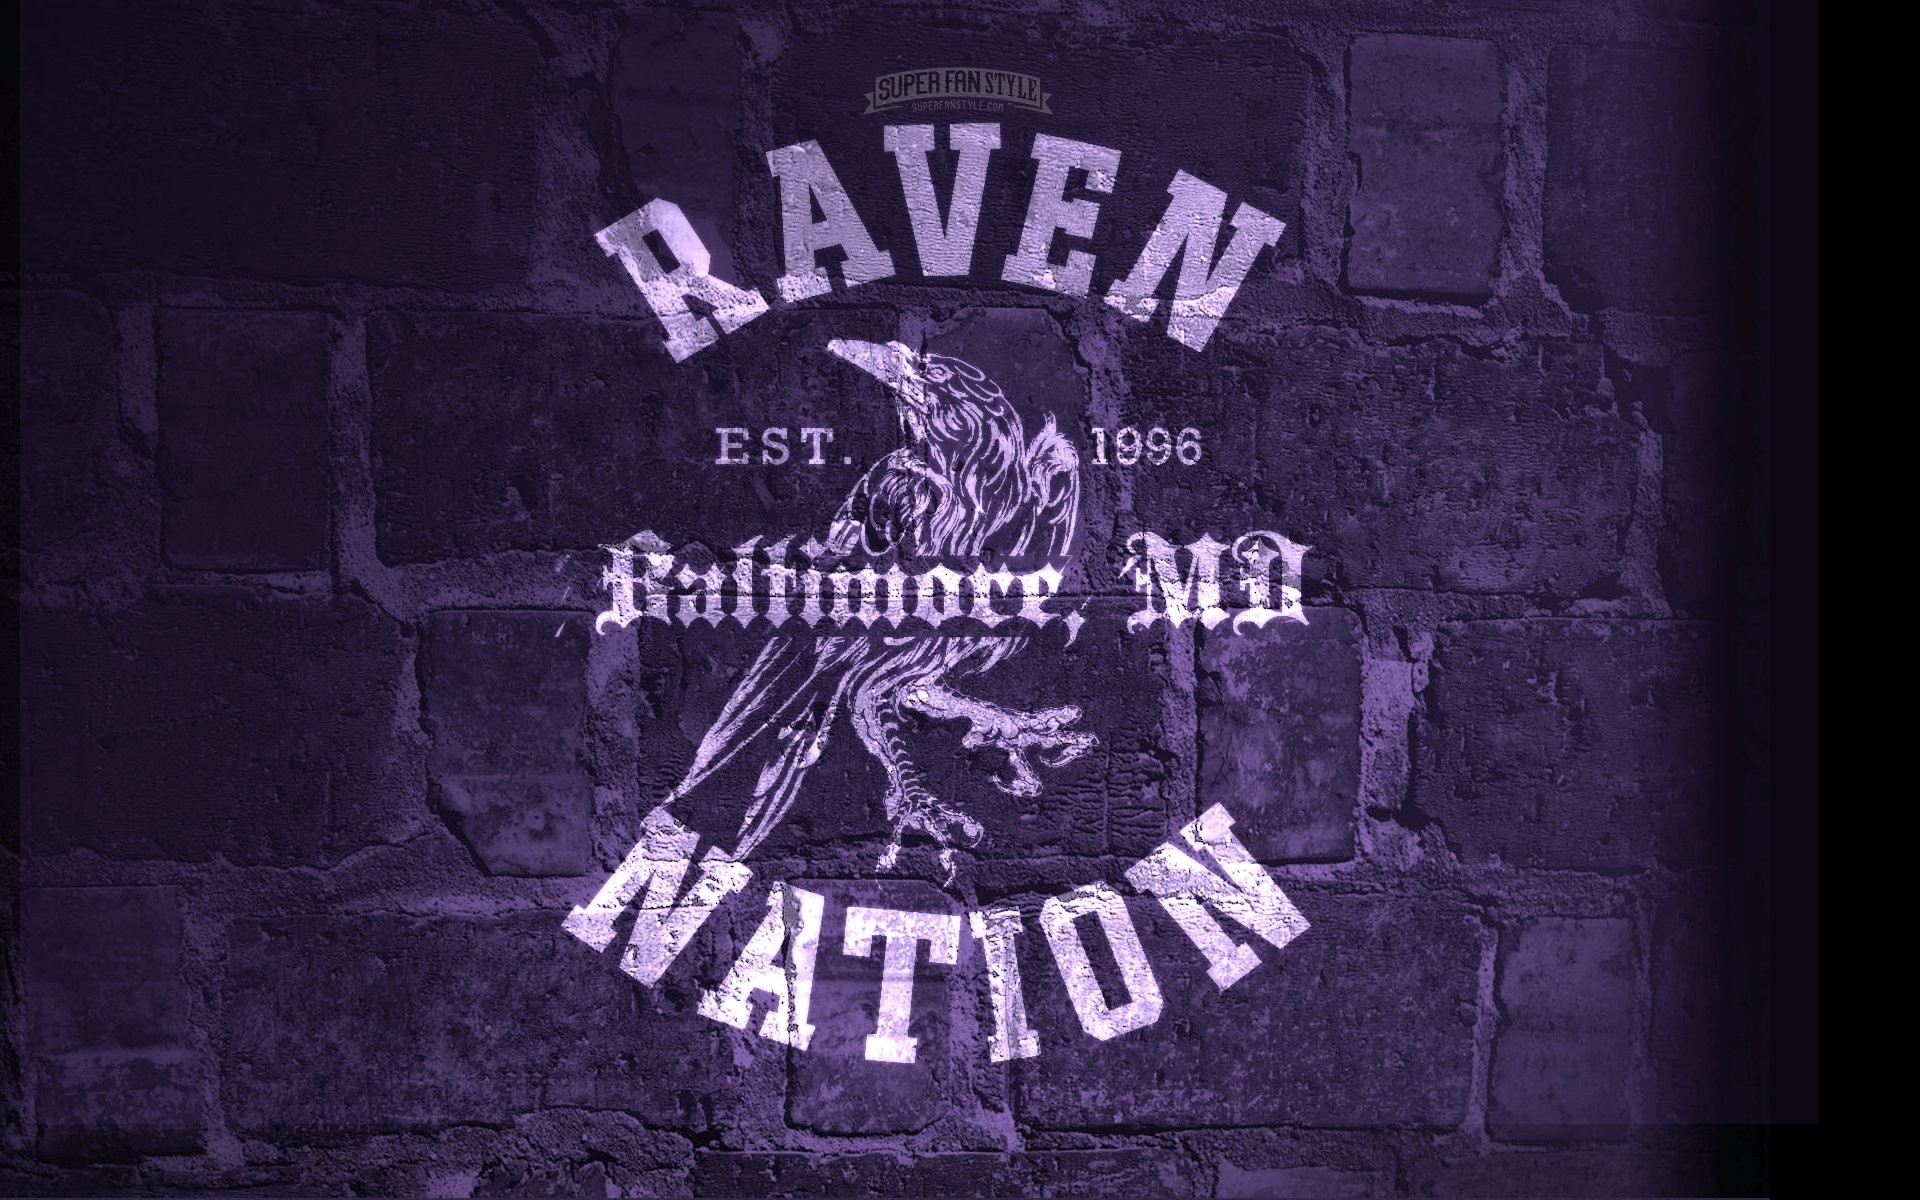 42+] Baltimore Ravens and Orioles Wallpaper - WallpaperSafari